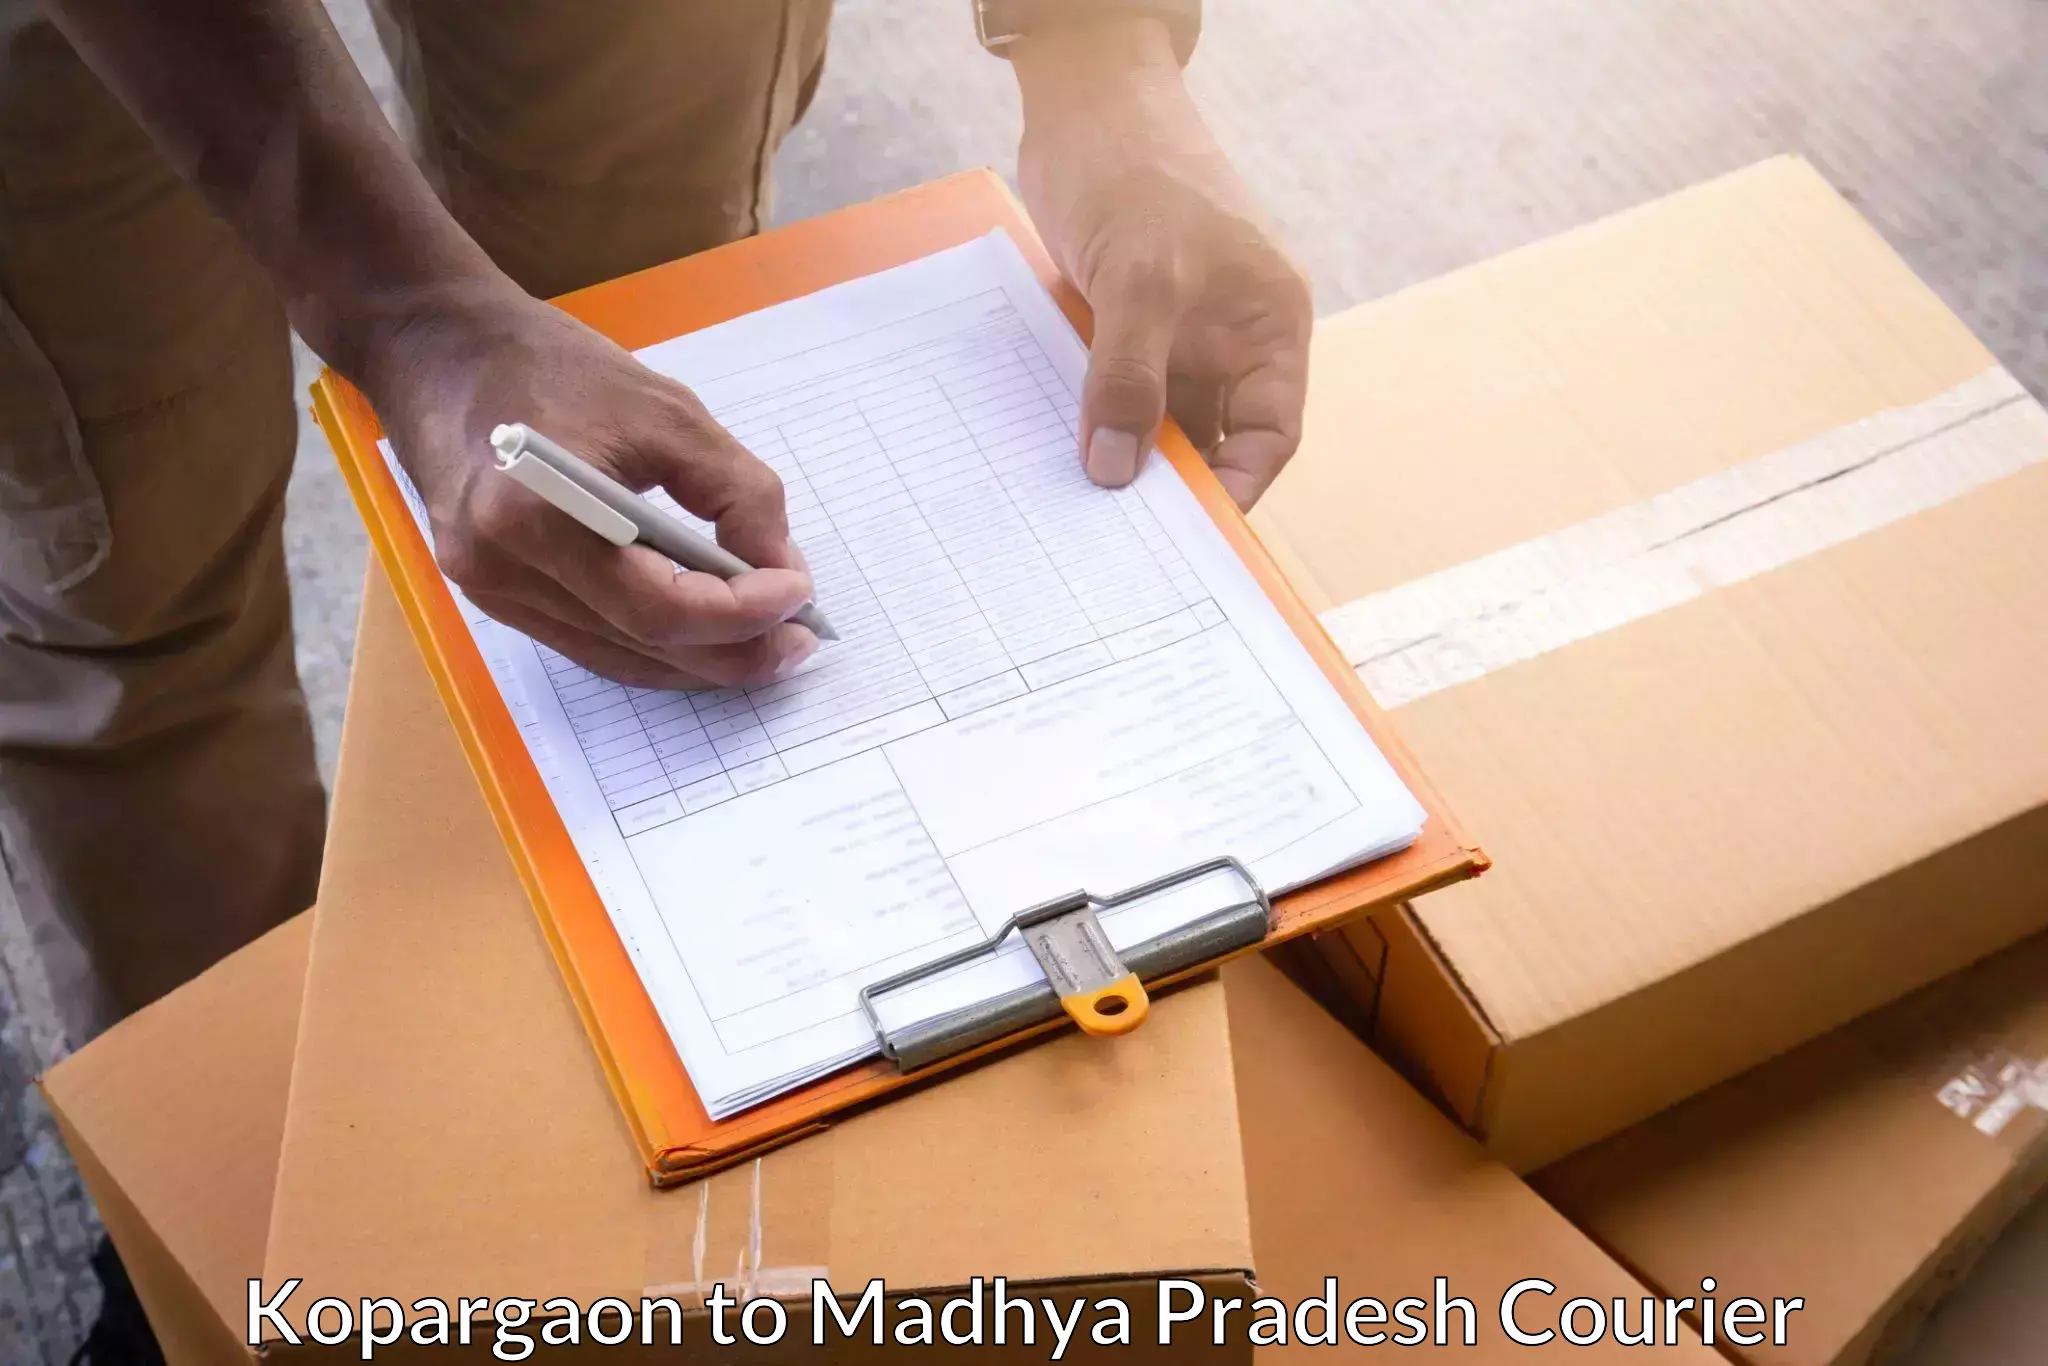 Modern courier technology Kopargaon to Betul